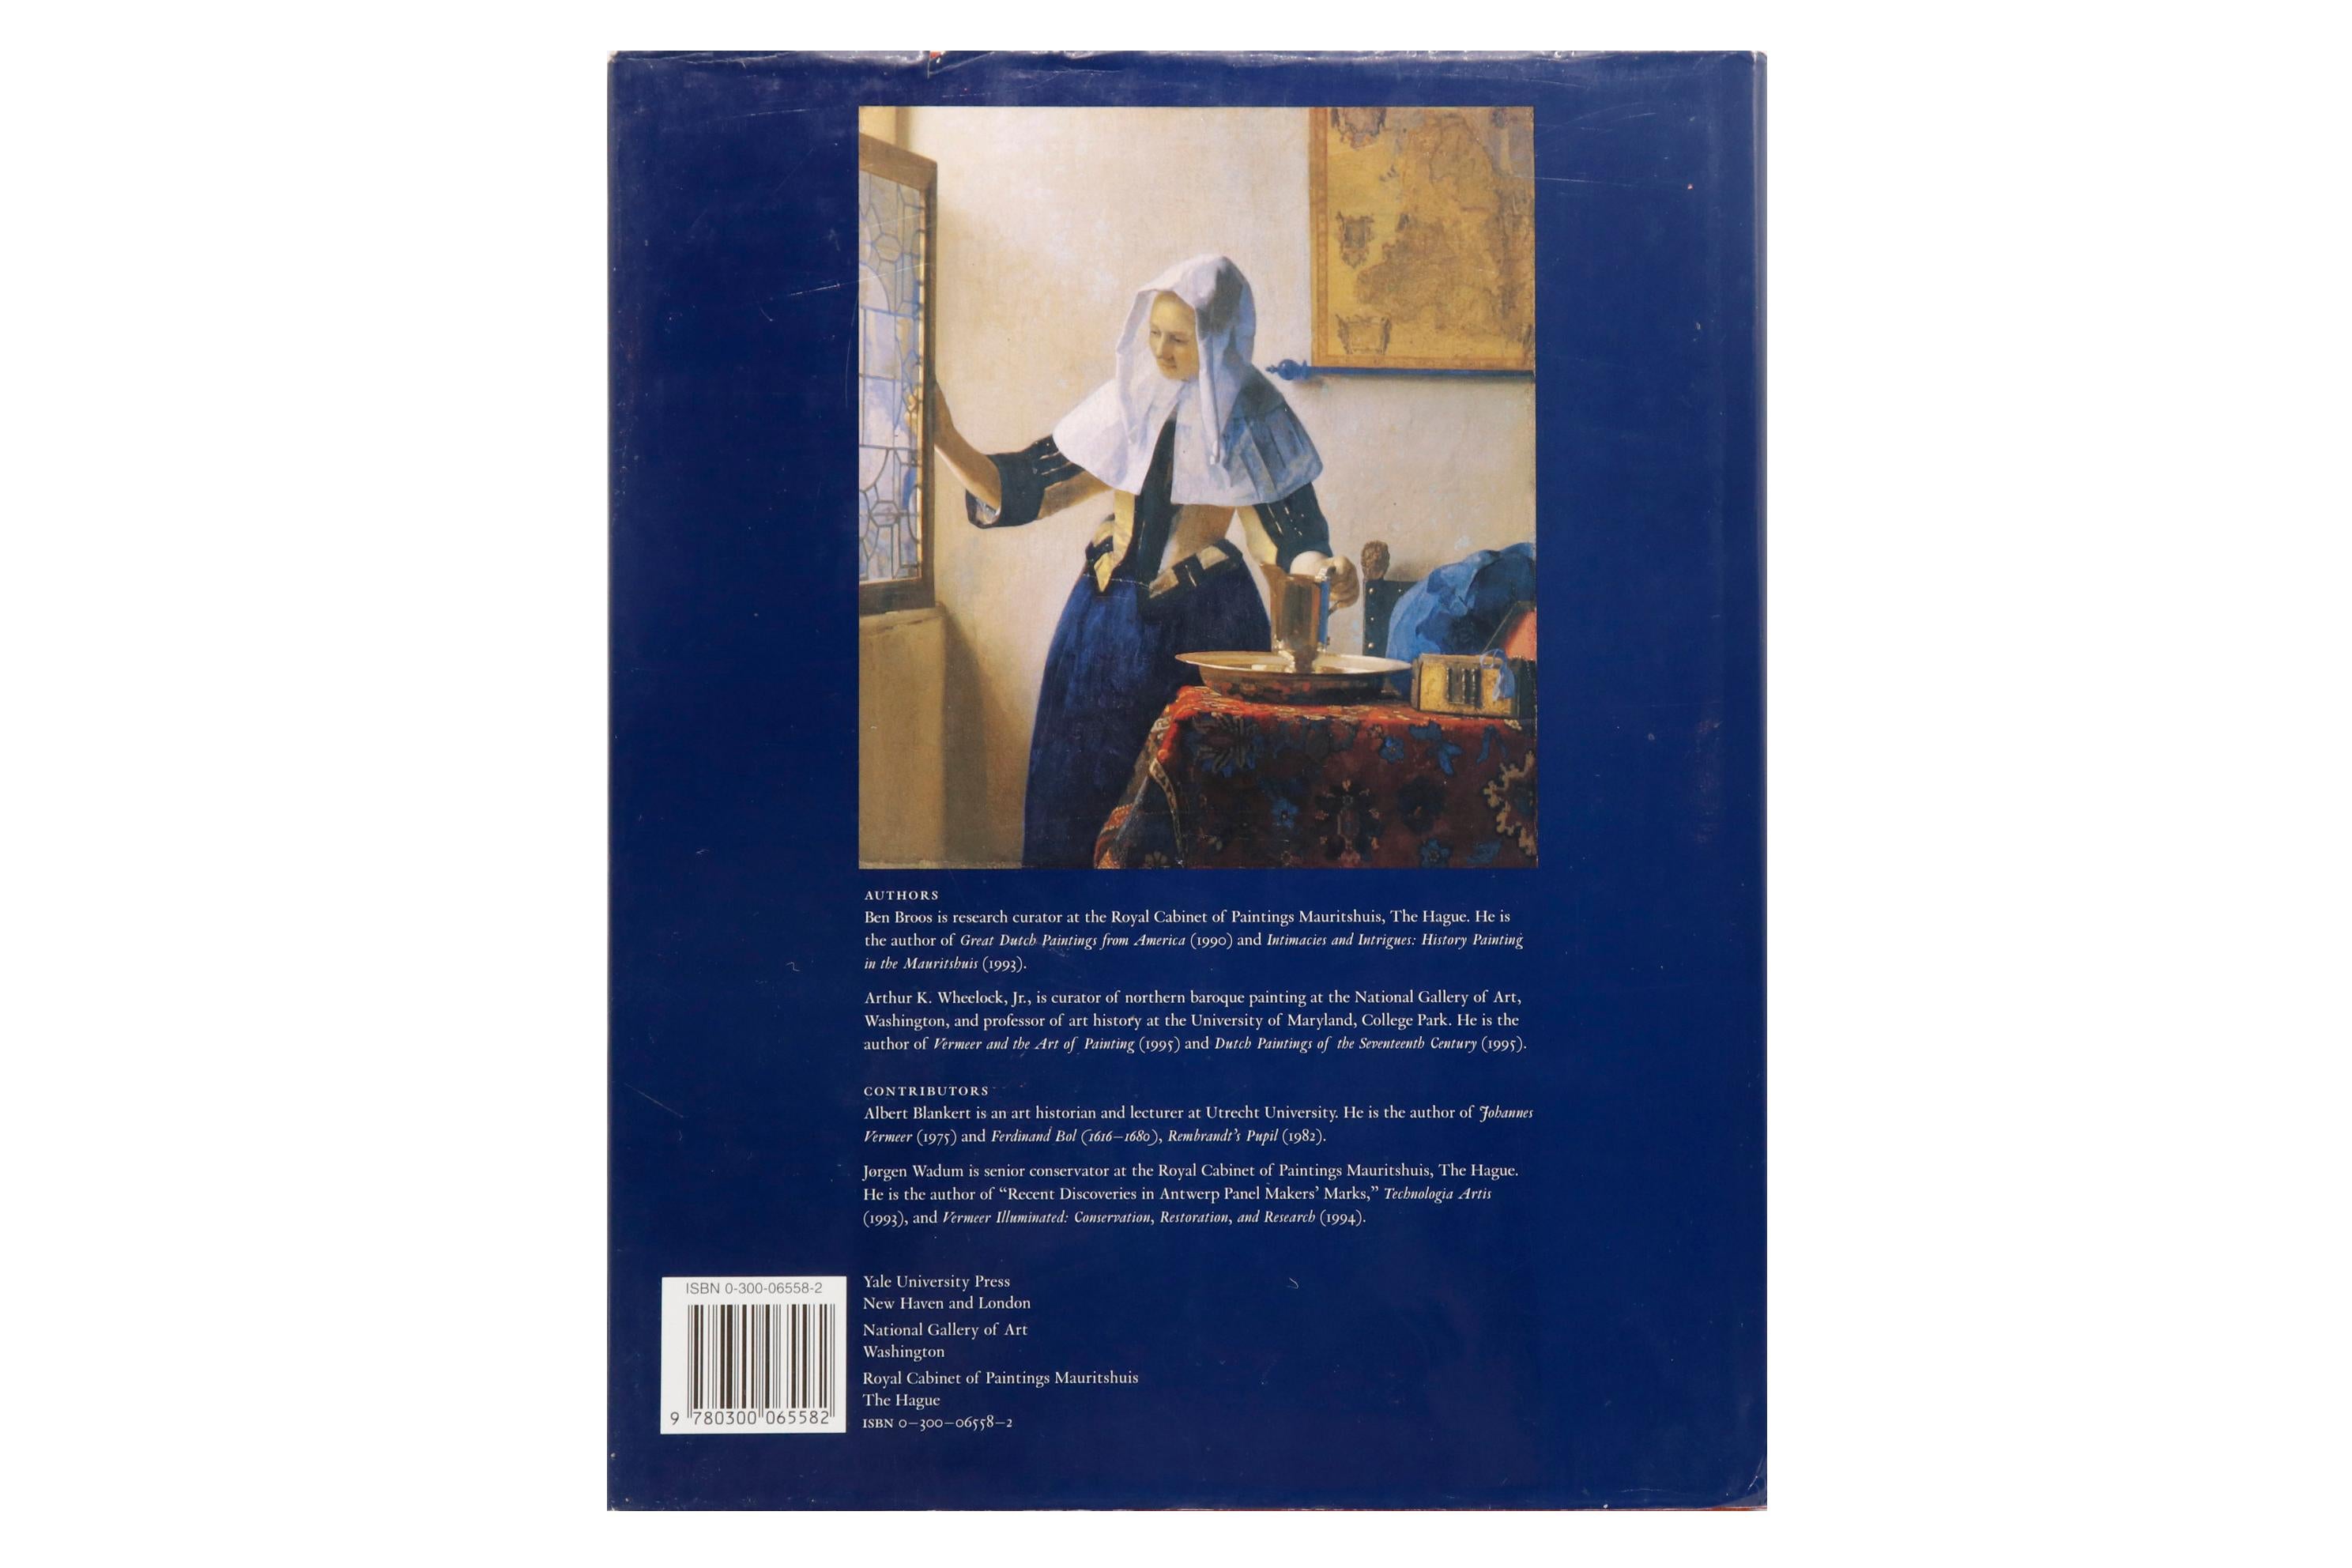 Livre d'art Johannes Vermeer de l'exposition tenue à la National Gallery of Art, Washington, du 12 novembre 1995 au 11 février 1996. Livre relié avec jaquette, illustré, 229 pages.